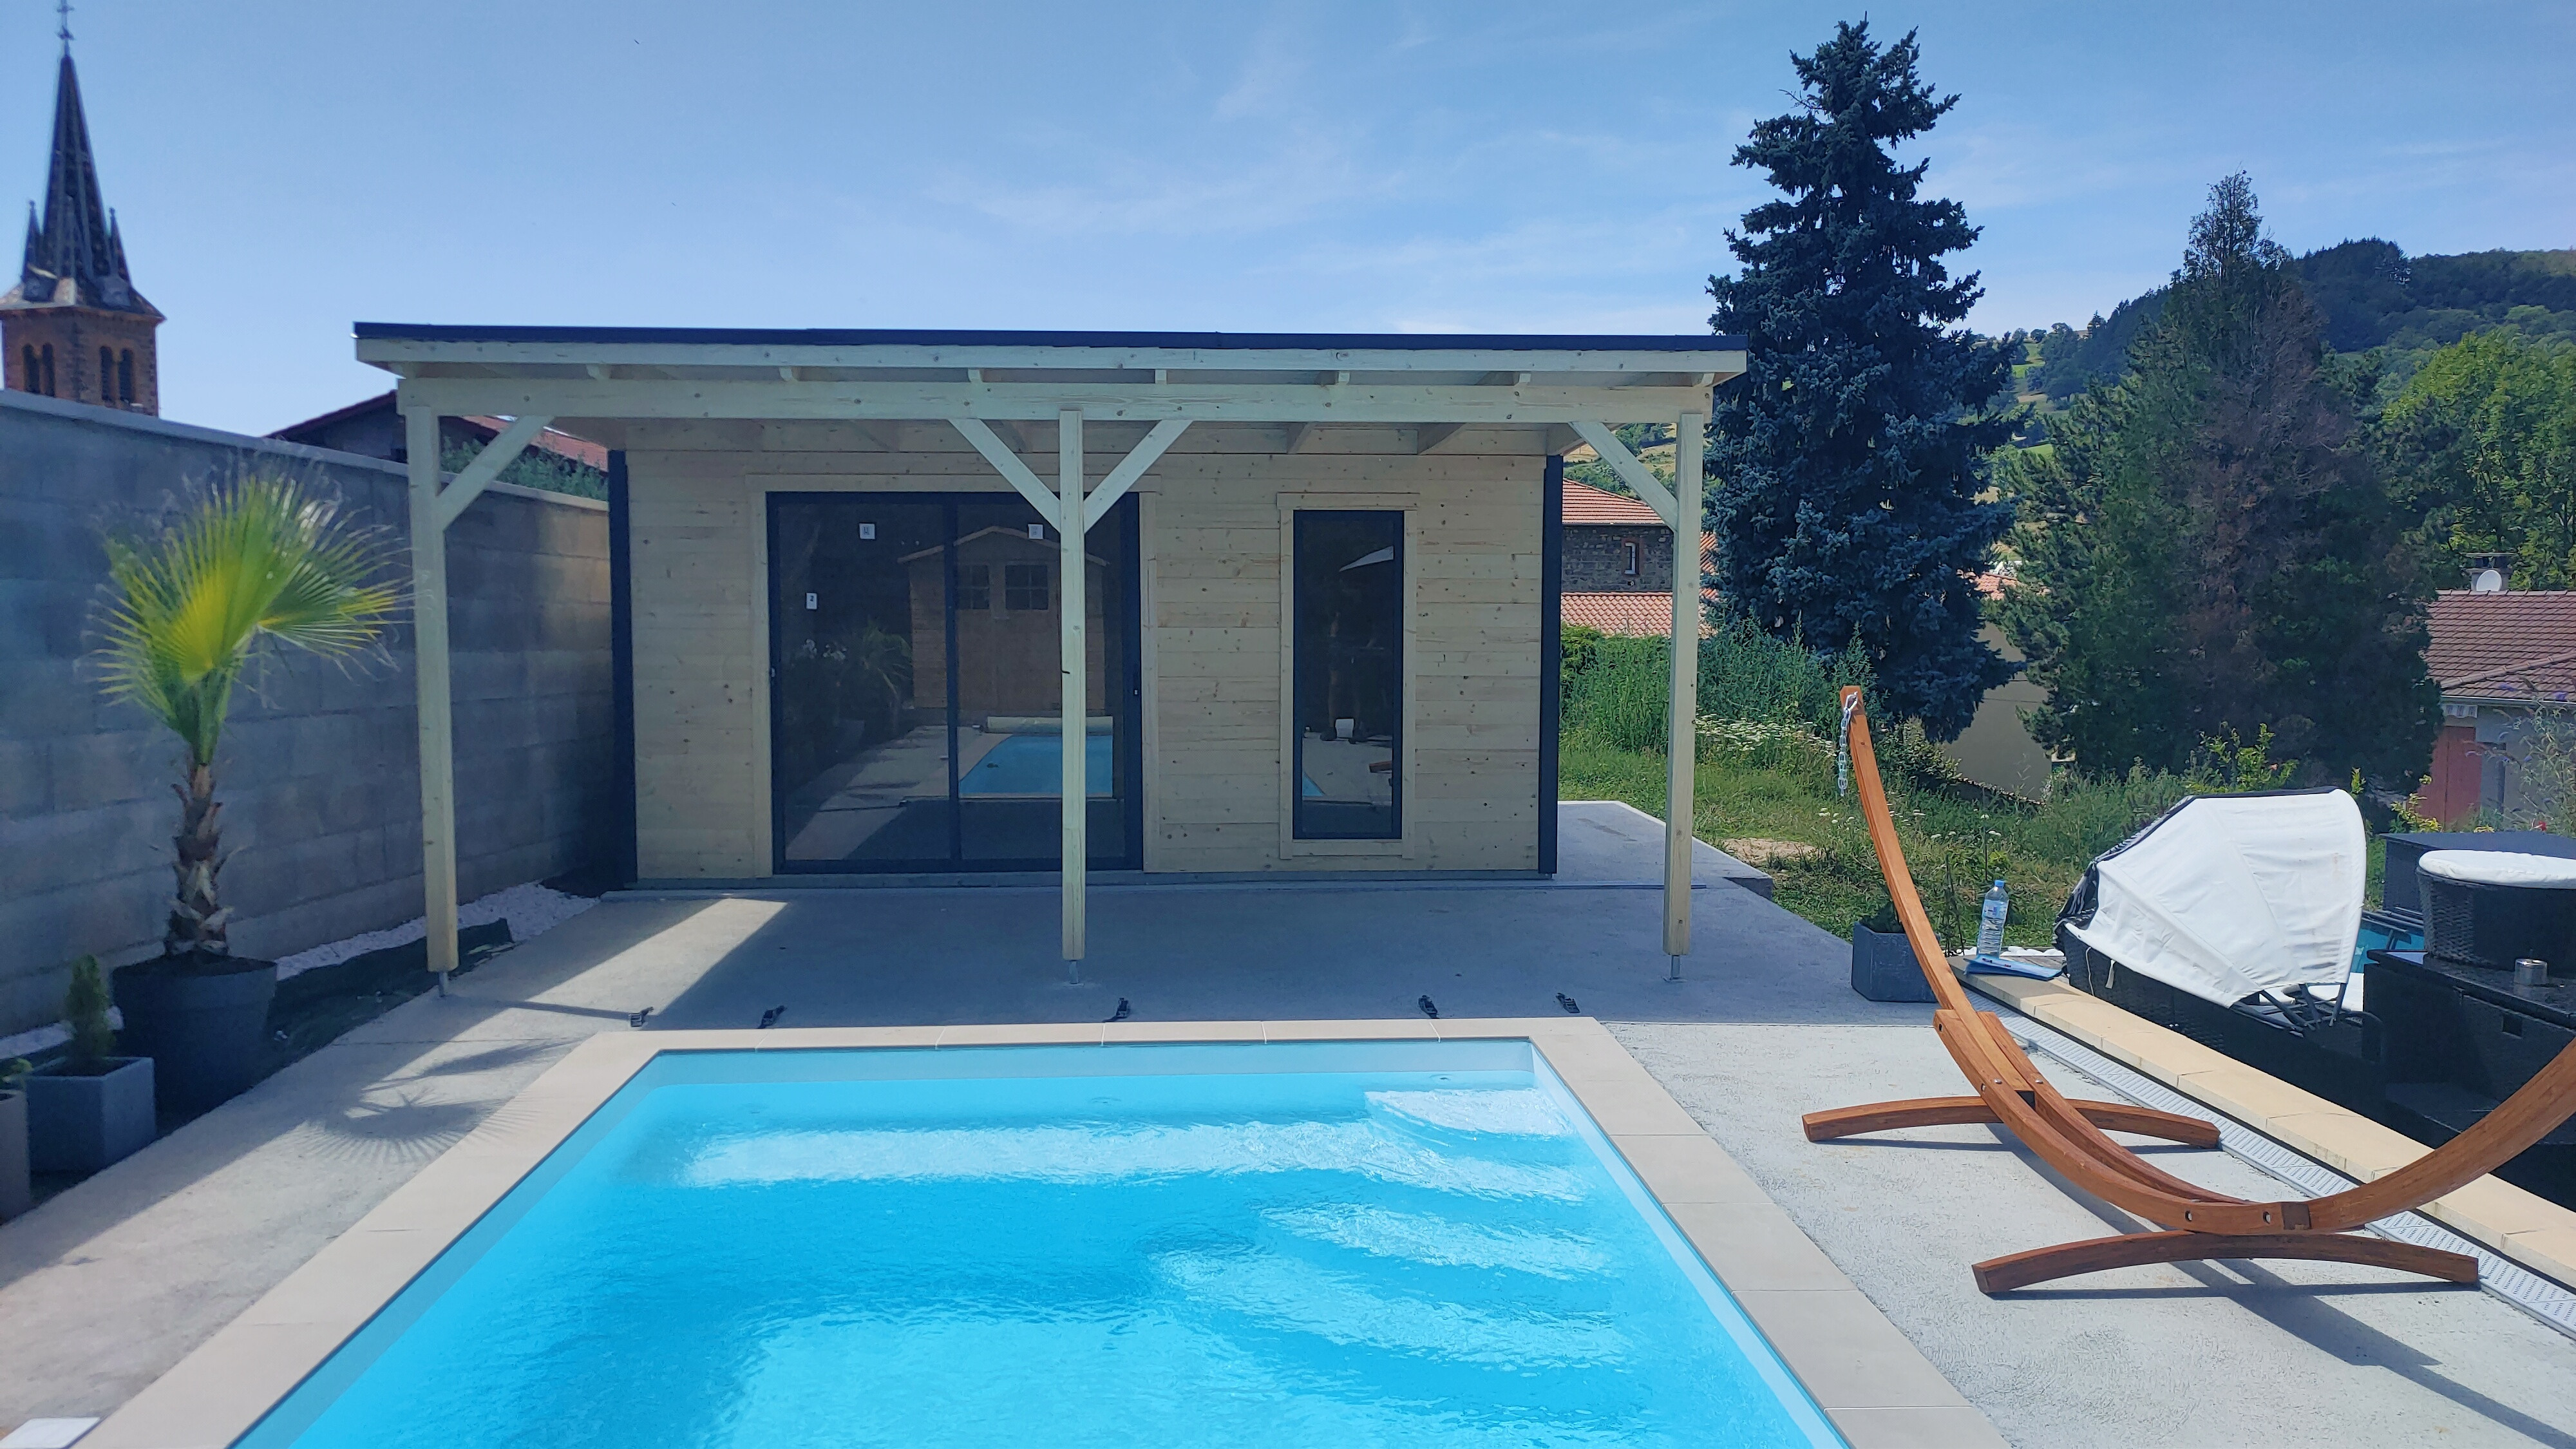 Pool house Vinéo 3 + Terrasse Ep 28mm - 14.50m2 intérieur